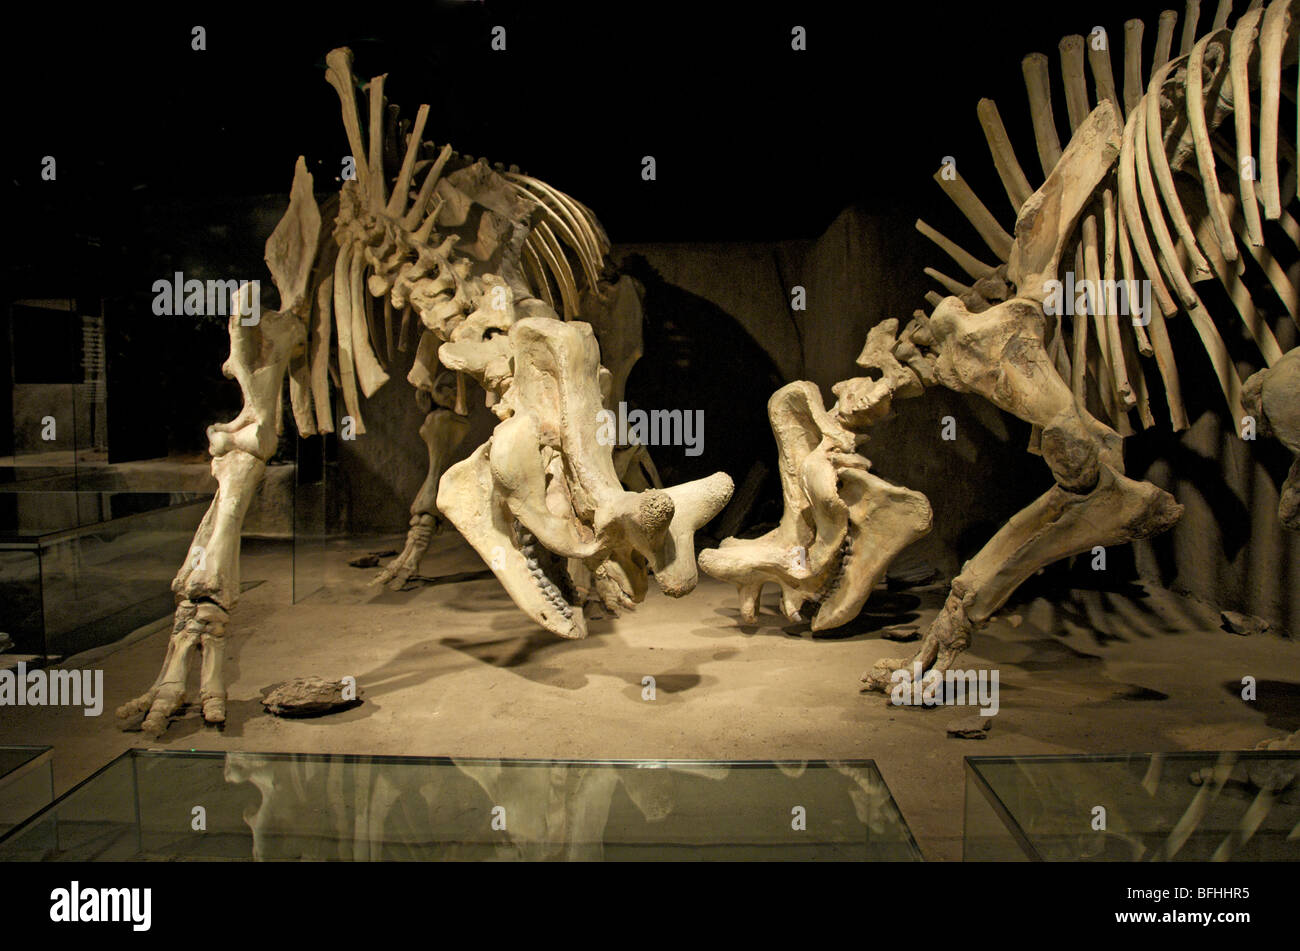 Skelette von Brontotheres (Brontotherien) kämpfen, von Cypress Hills Formation, Saskatchewan.  Royal Tyrrell Museum, Alta, Kanada Stockfoto